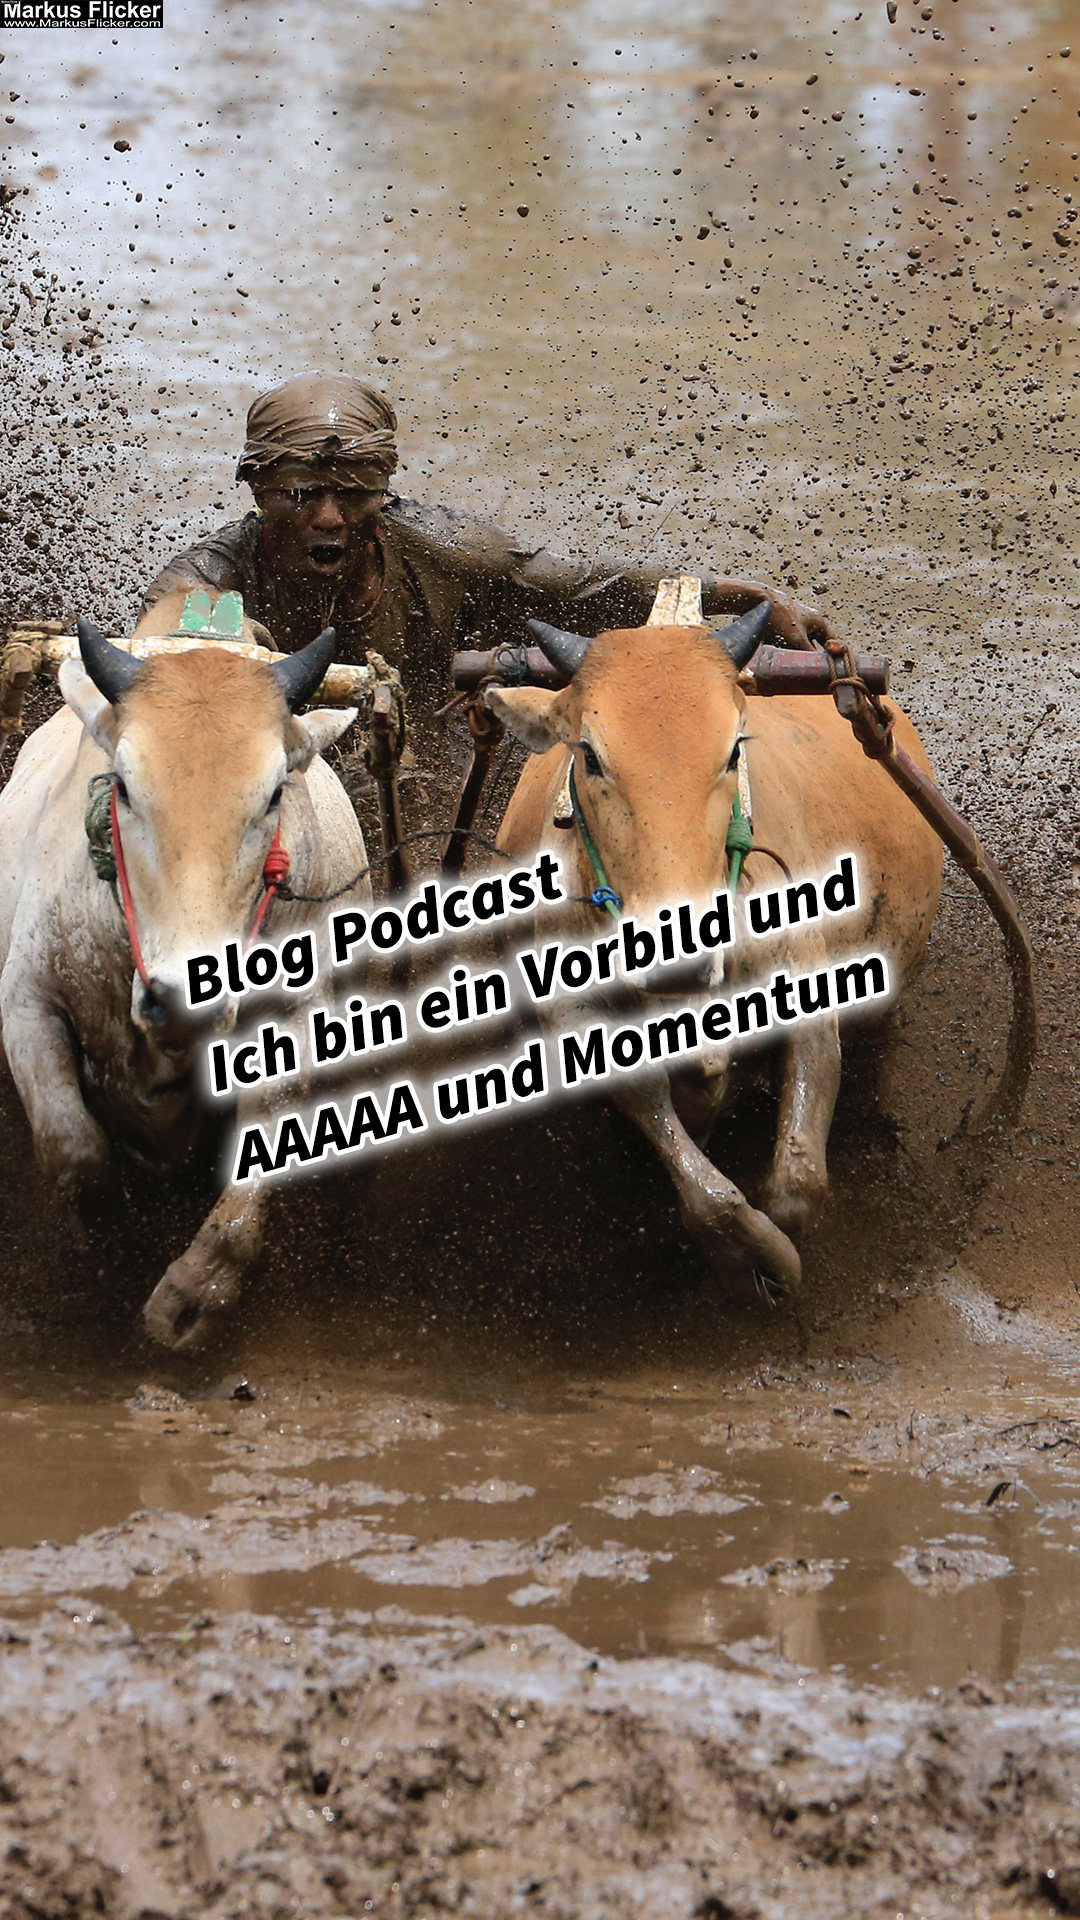 Blog Podcast Ich bin ein Vorbild und AAAAA und Momentum Thomas Alva Edison, Dirk Kreuter und Marcel Remus als Vorbild Über ToDo Liste und Vision Board